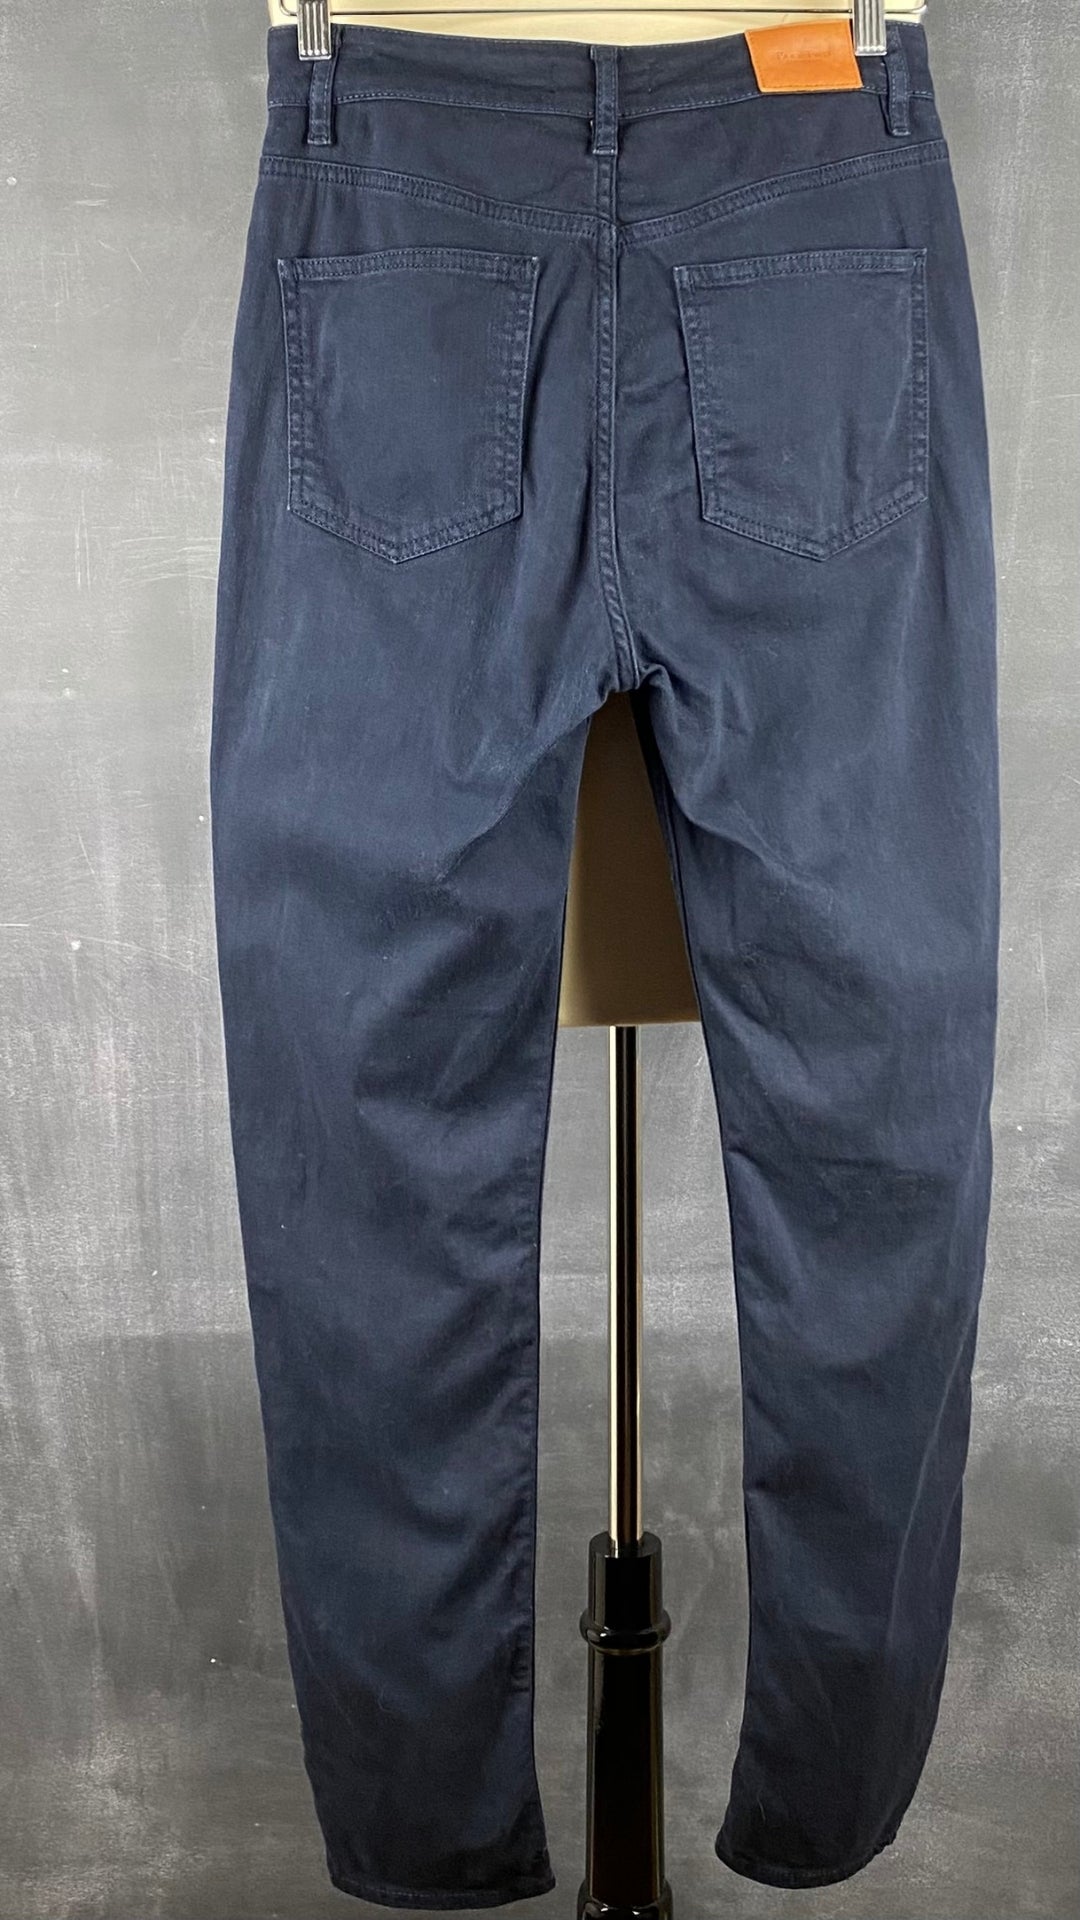 Pantalon denim marine ajusté Part Two, taille 28-29. Vue de dos.